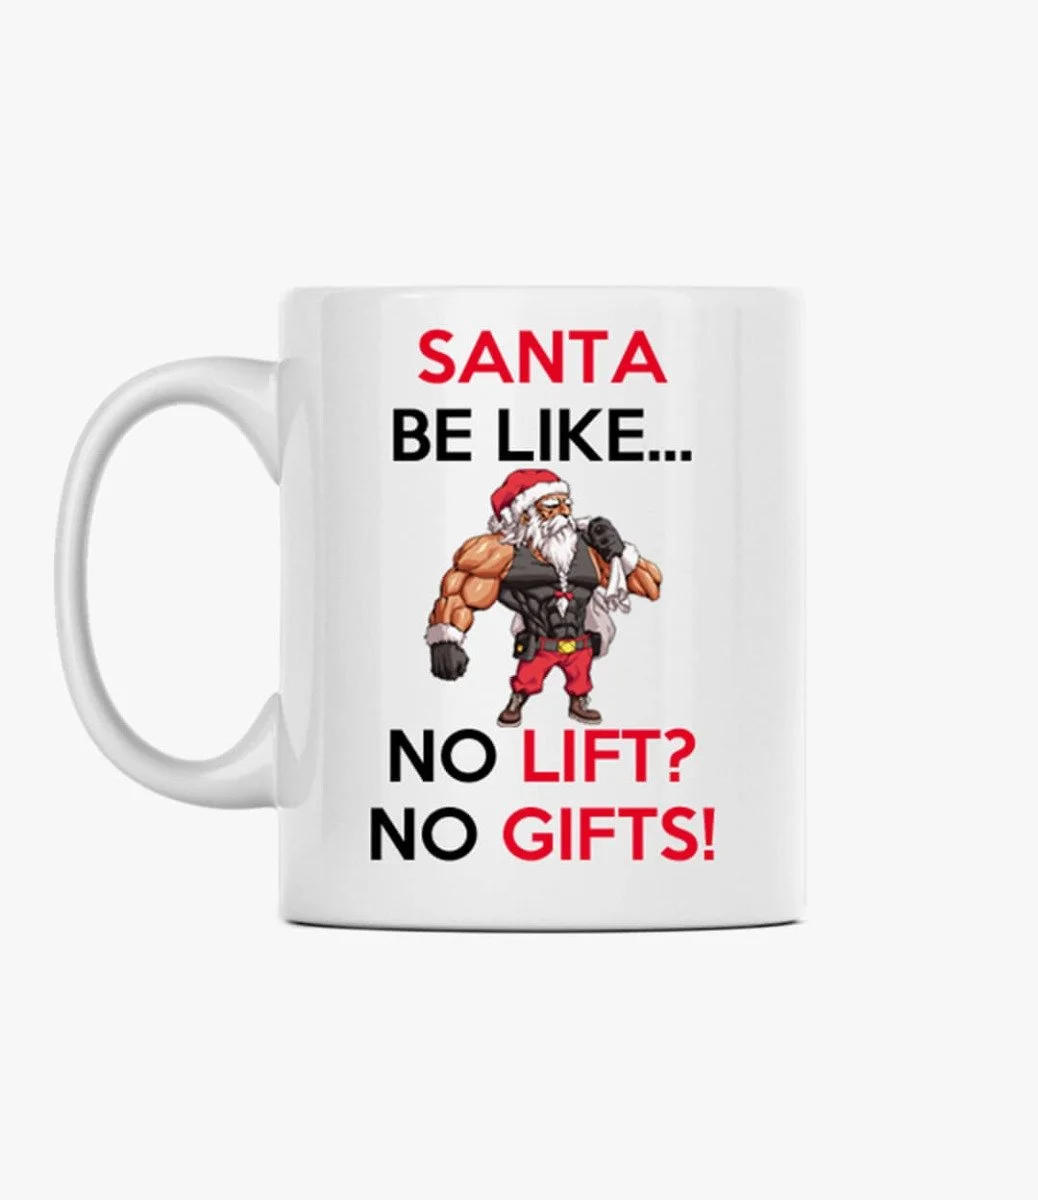 Santa Be Like... Mug